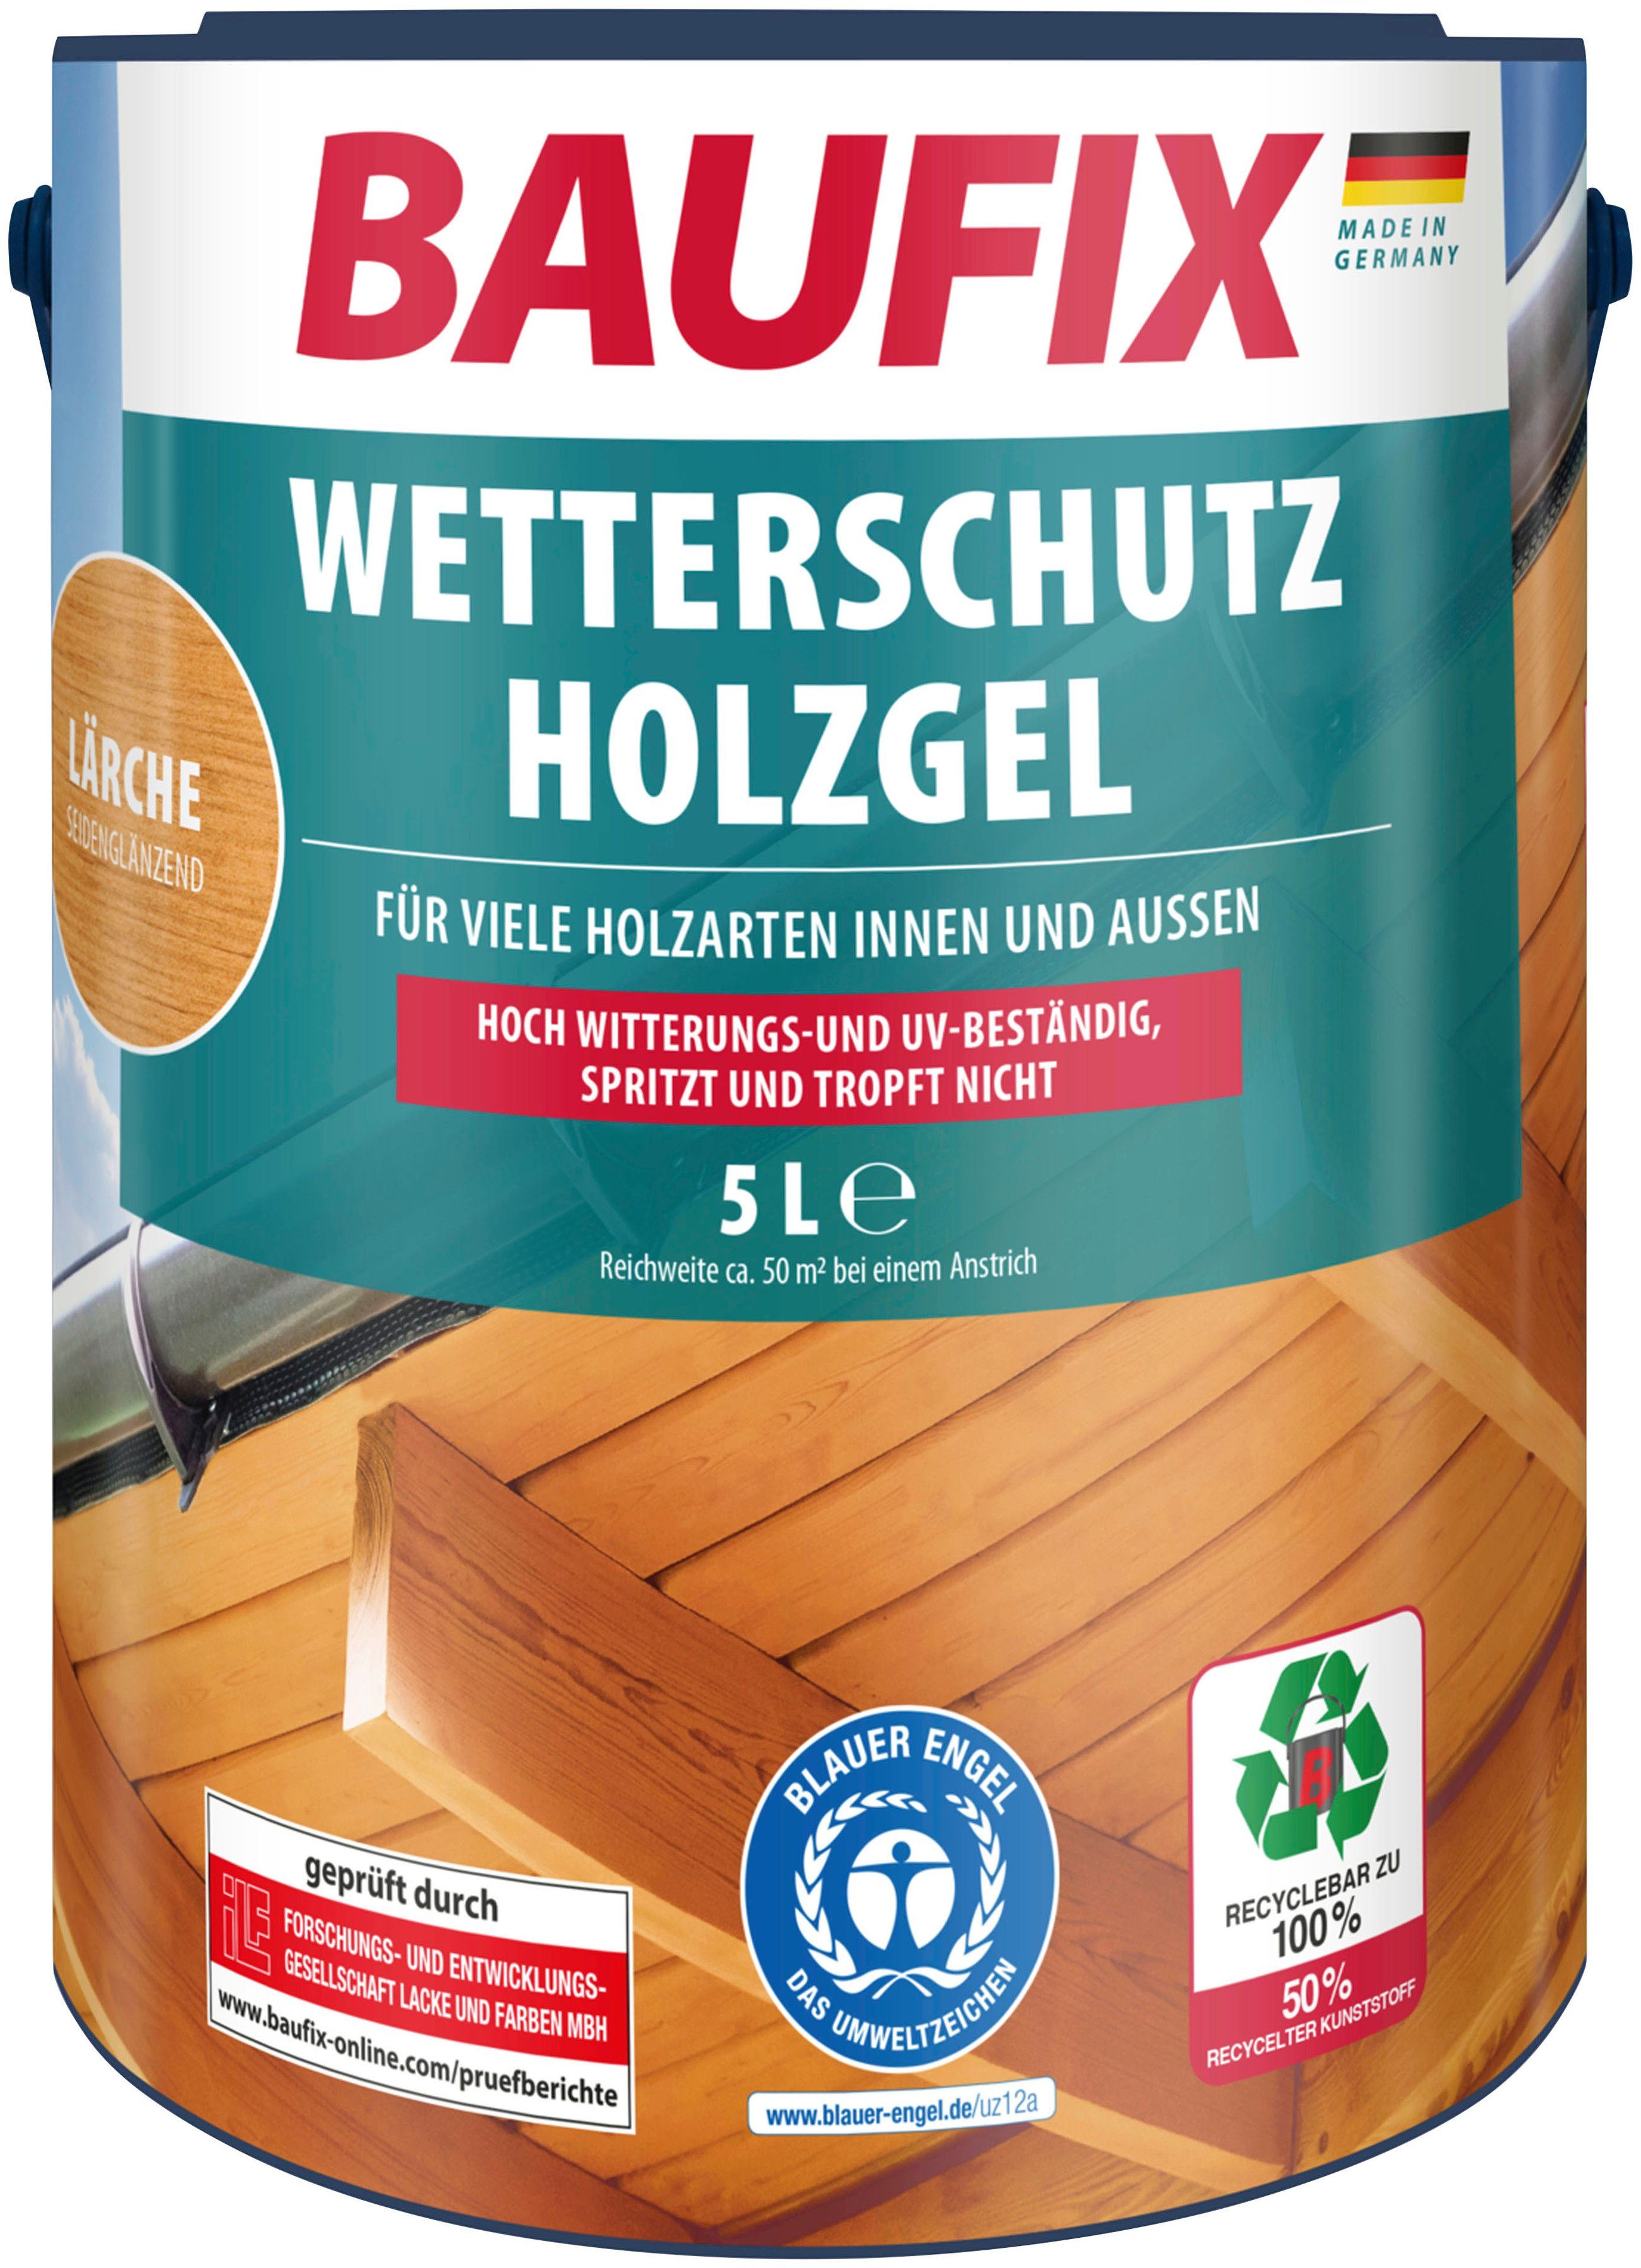 Baufix Holzschutzlasur Wetterschutz-Holzgel, wetterbeständig, UV beständig, atmungsaktiv, 5L, seidenglänzend lärche